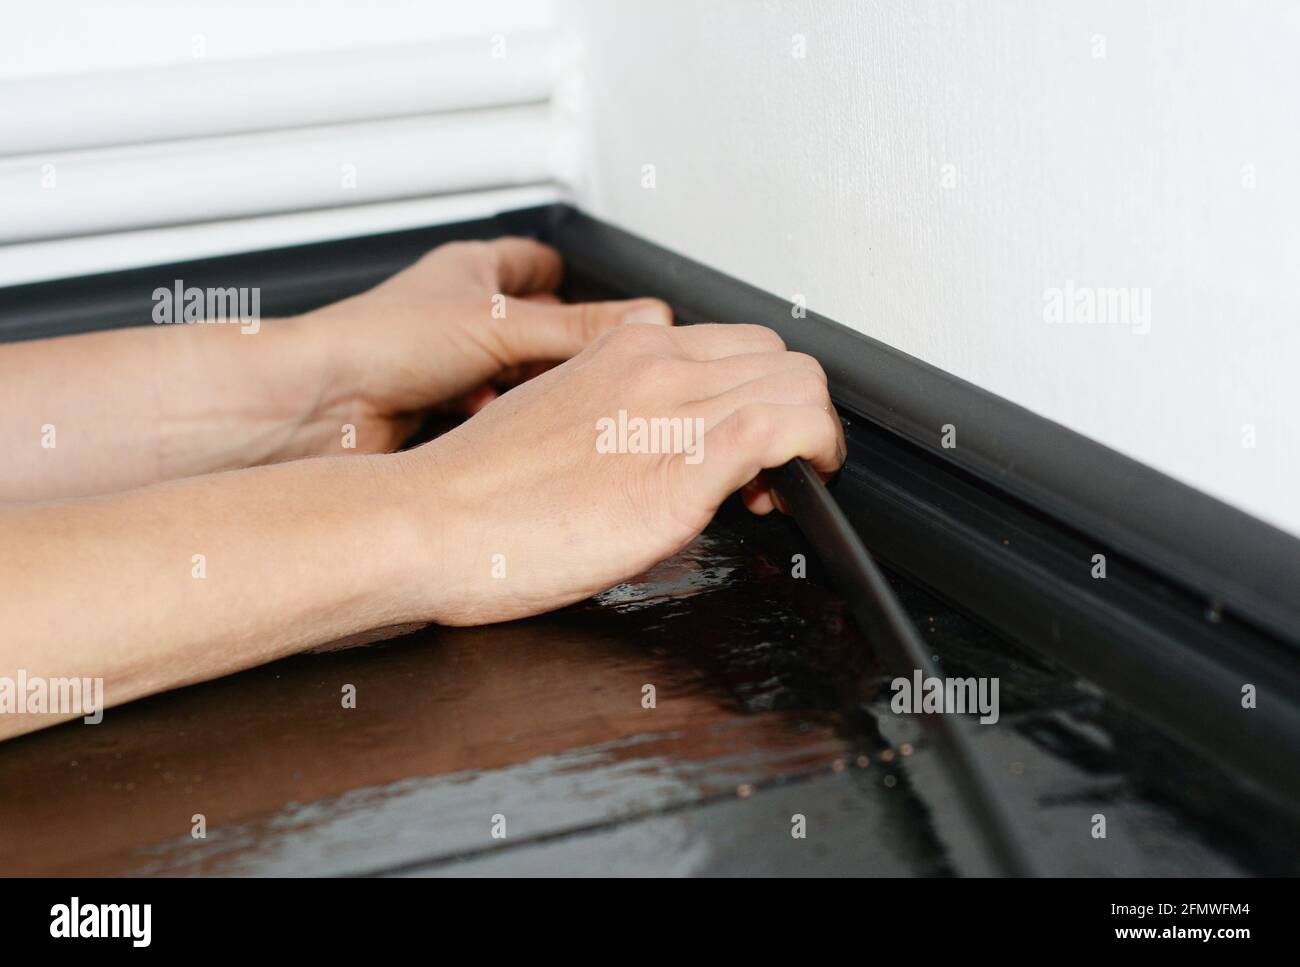 Ein Mann installiert eine schwarze Kunststoff-Sockelleiste, um Kabel und Drähte zu verbergen. Ein Hausbesitzer verbirgt die Verkabelung im Kabelkanal einer Sockelleiste. Stockfoto